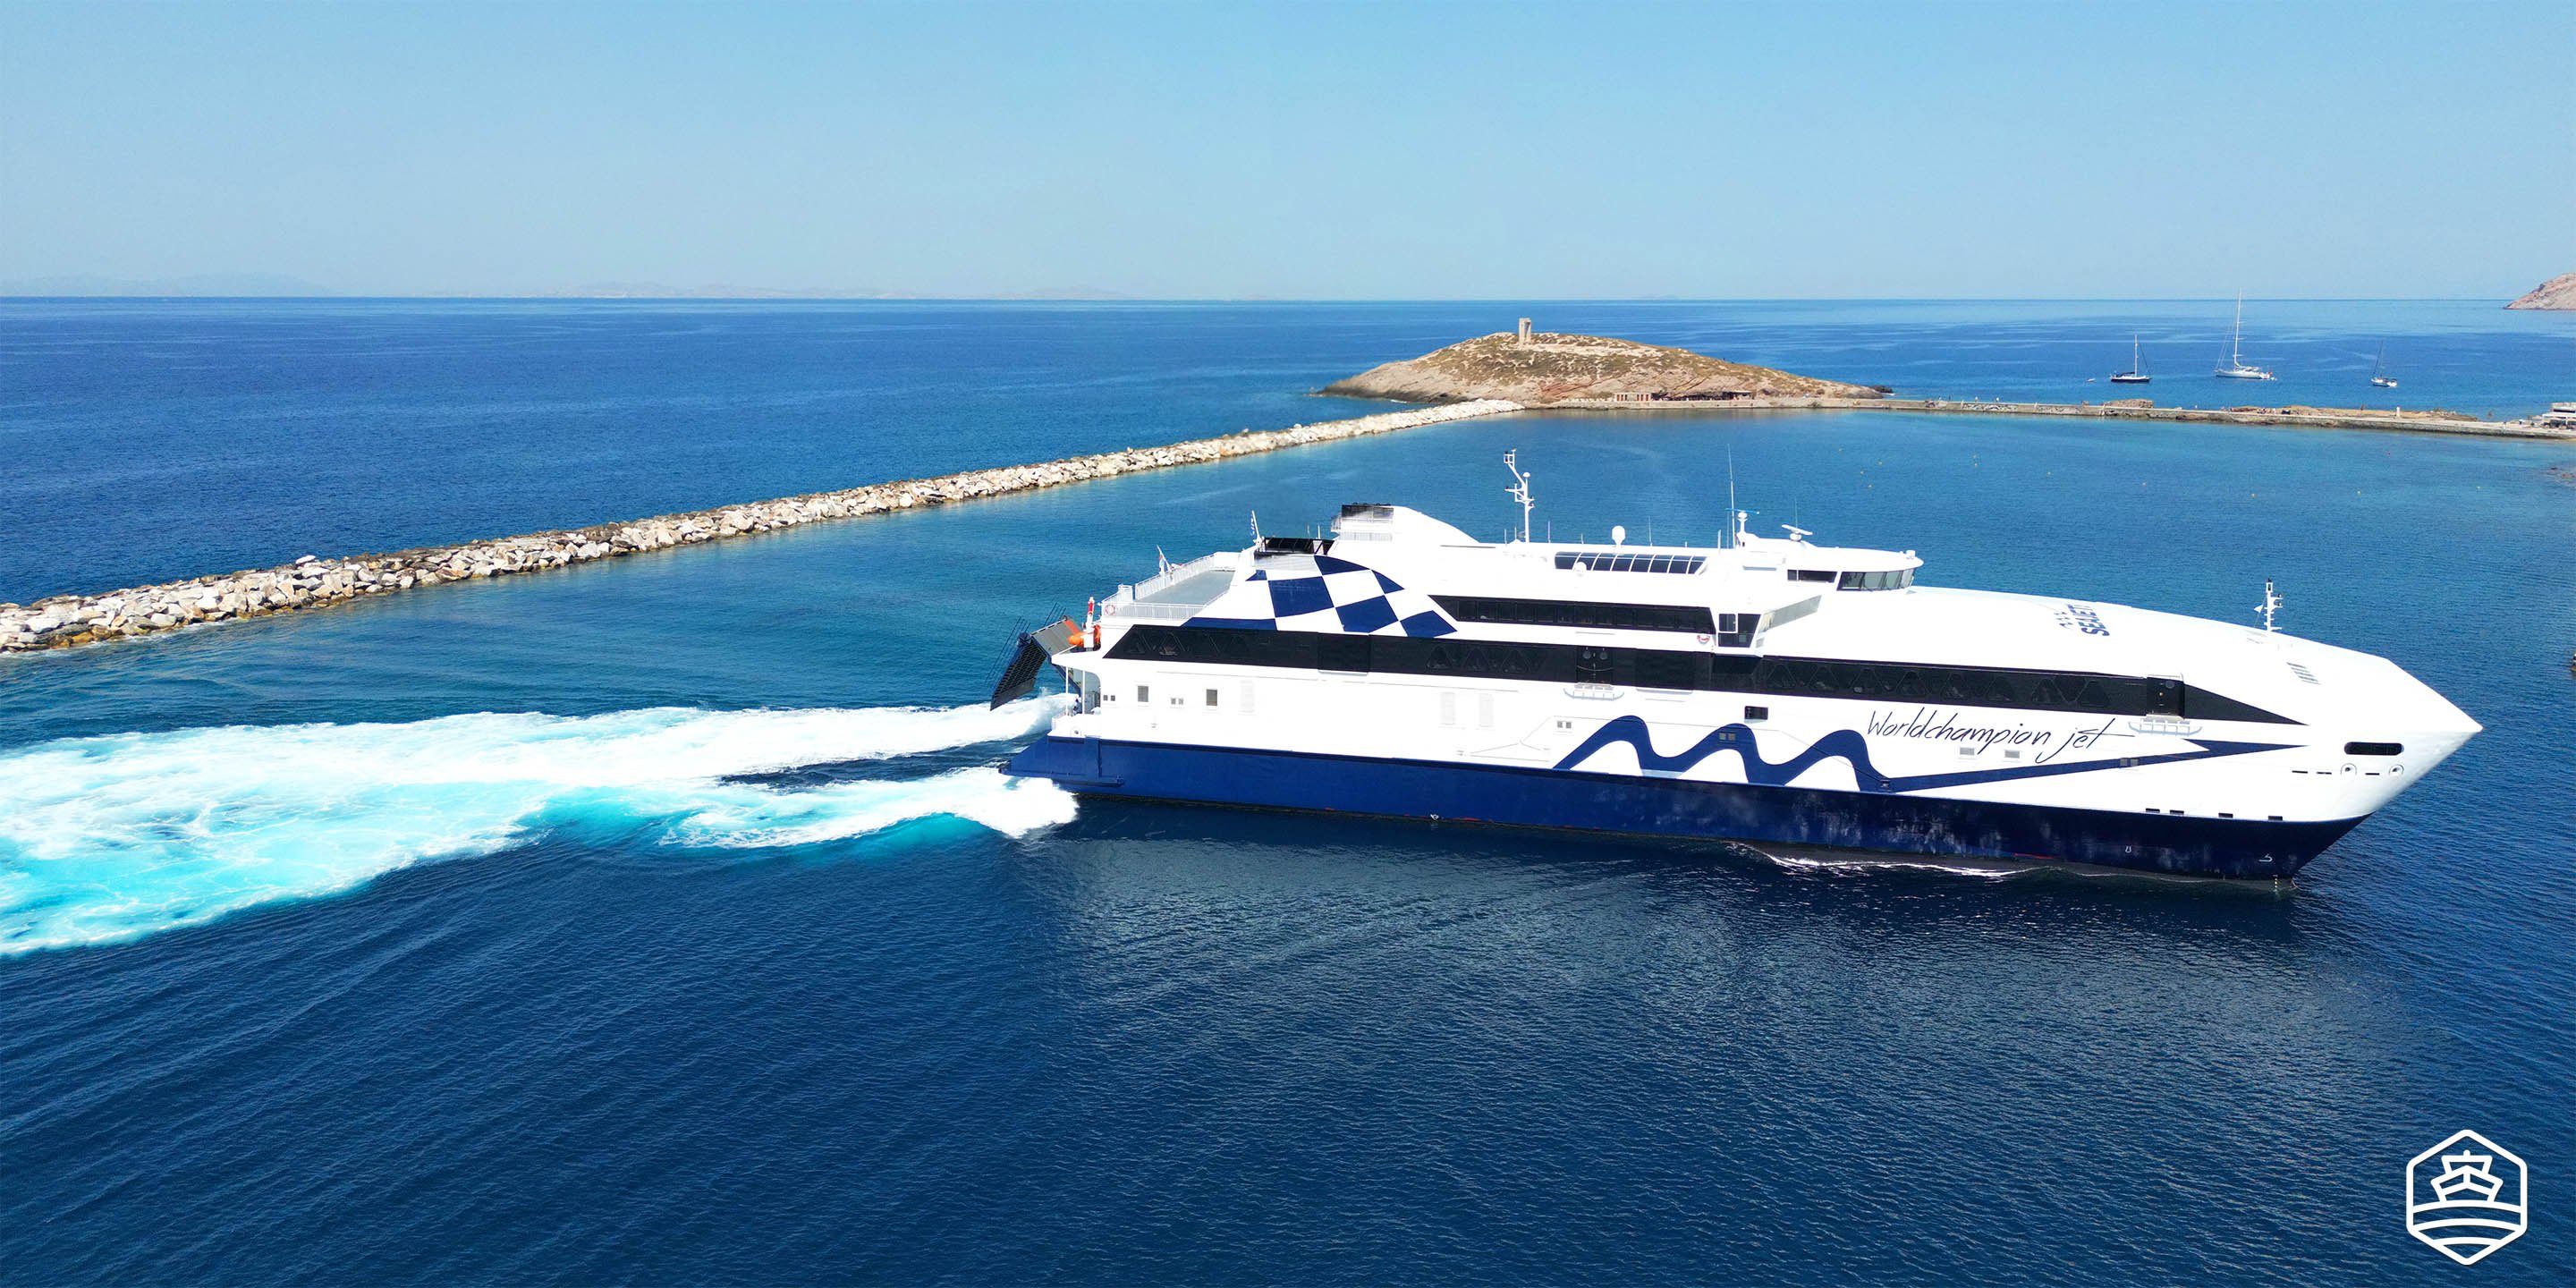 World Champion Jet arrivant au port de Naxos, en provenance de Mykonos